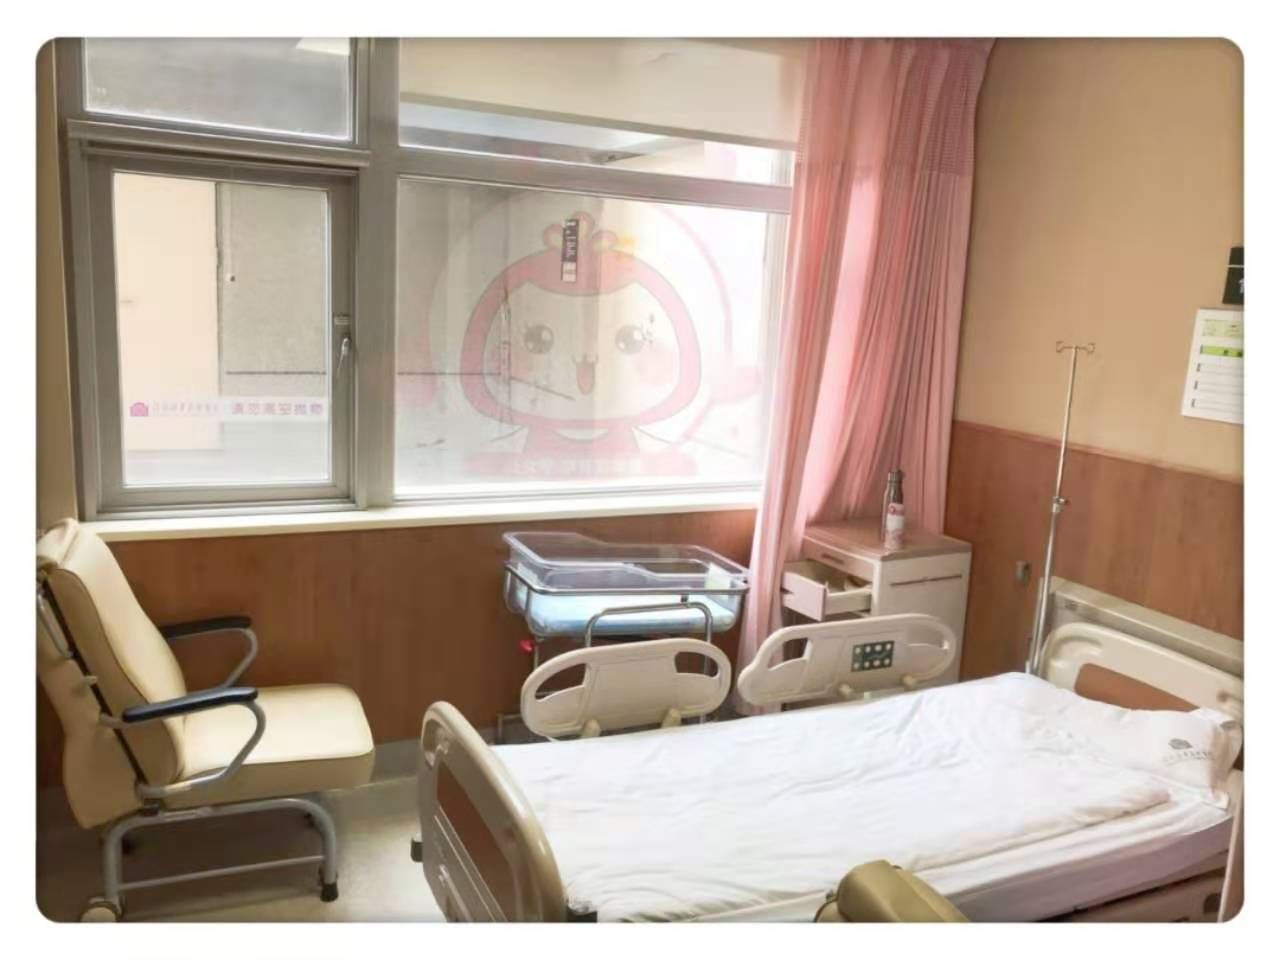 关于北京市海淀妇幼保健院黄牛建档挂号；磁共振检查时间有望减半的信息